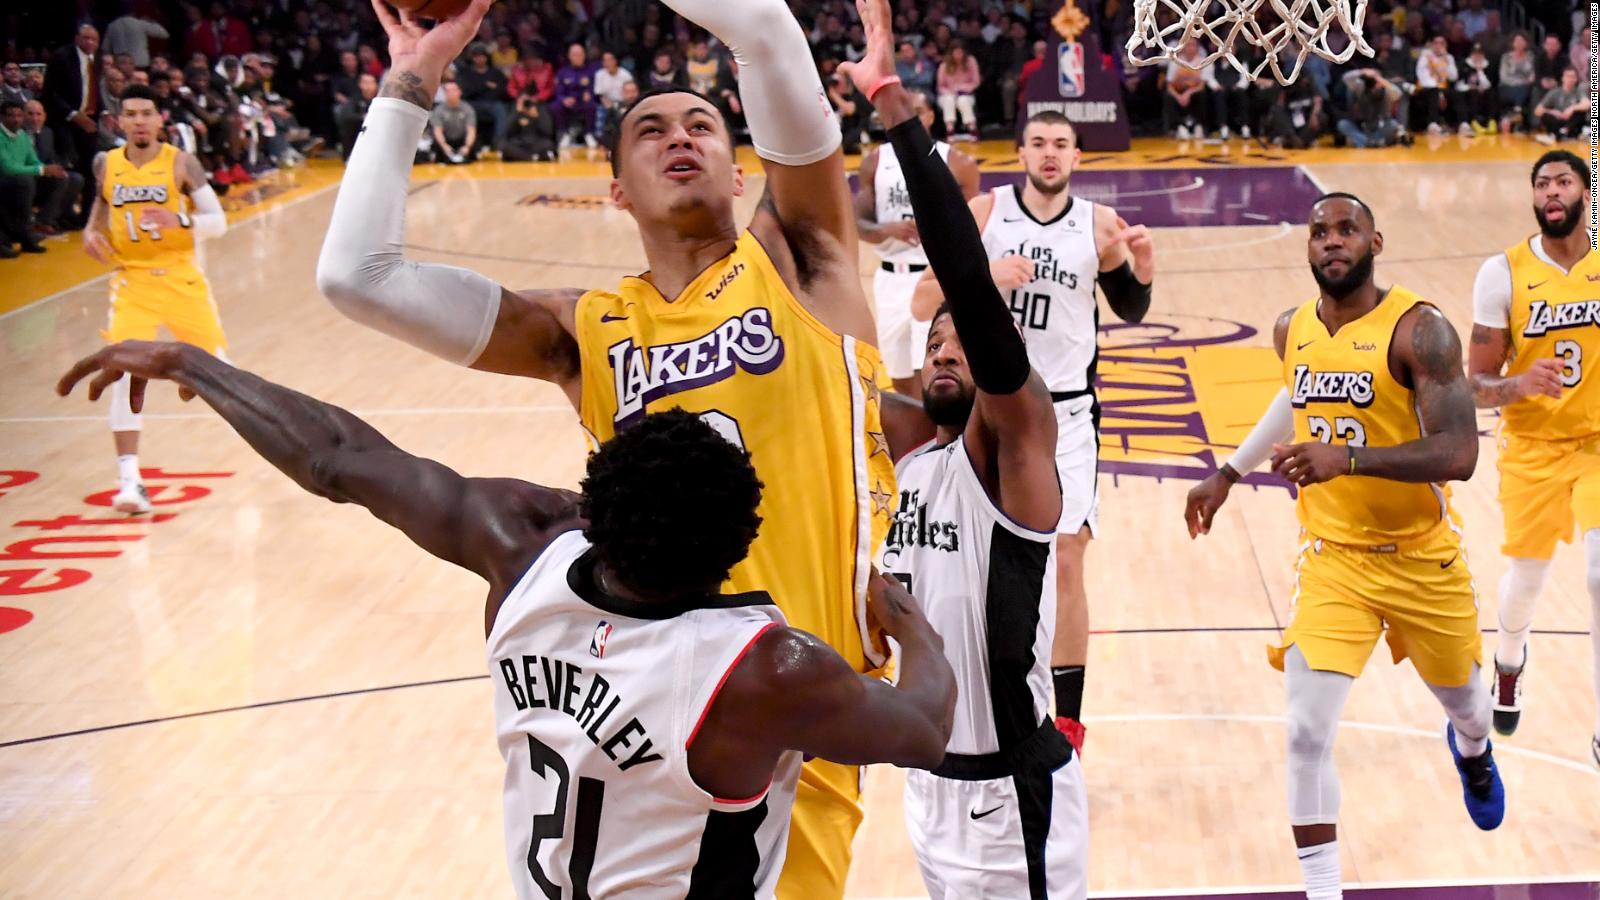 Boletos para el partido entre Lakers y Clippers alcanzan los US 24.000